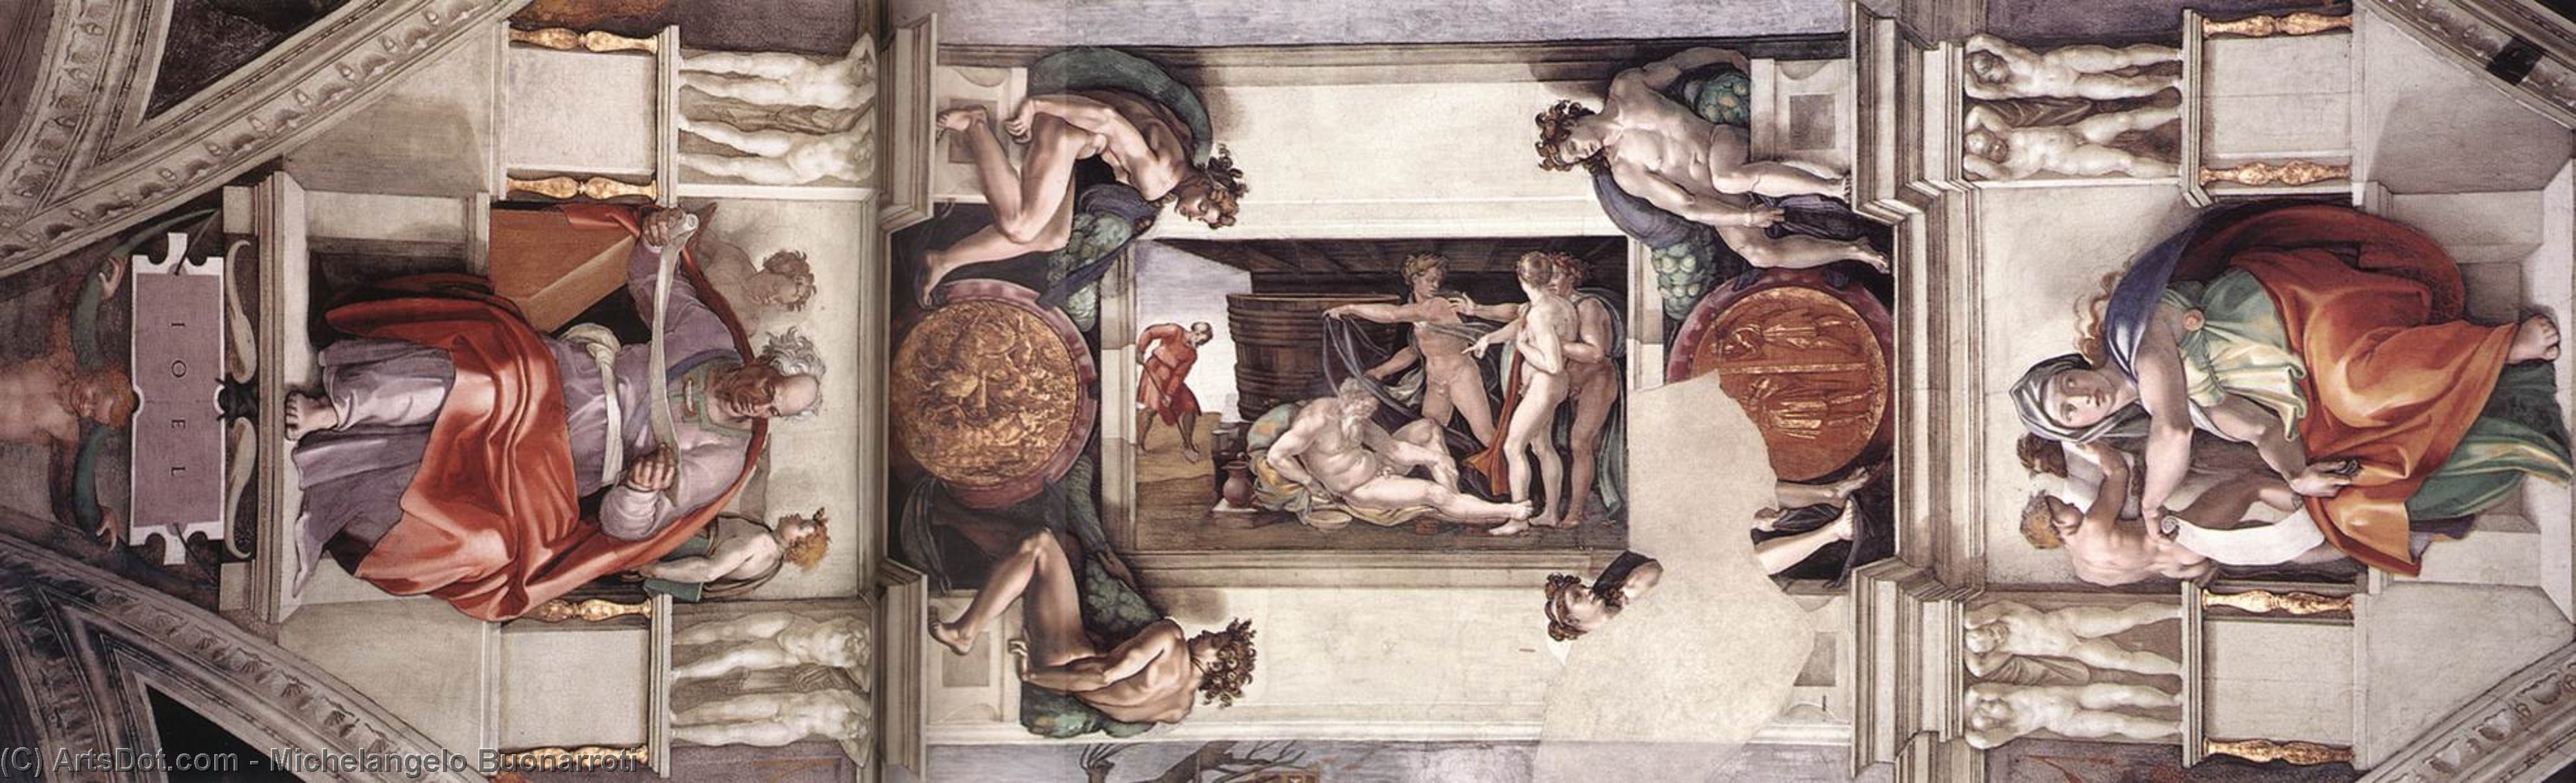 Wikioo.org - Bách khoa toàn thư về mỹ thuật - Vẽ tranh, Tác phẩm nghệ thuật Michelangelo Buonarroti - The first bay of the ceiling